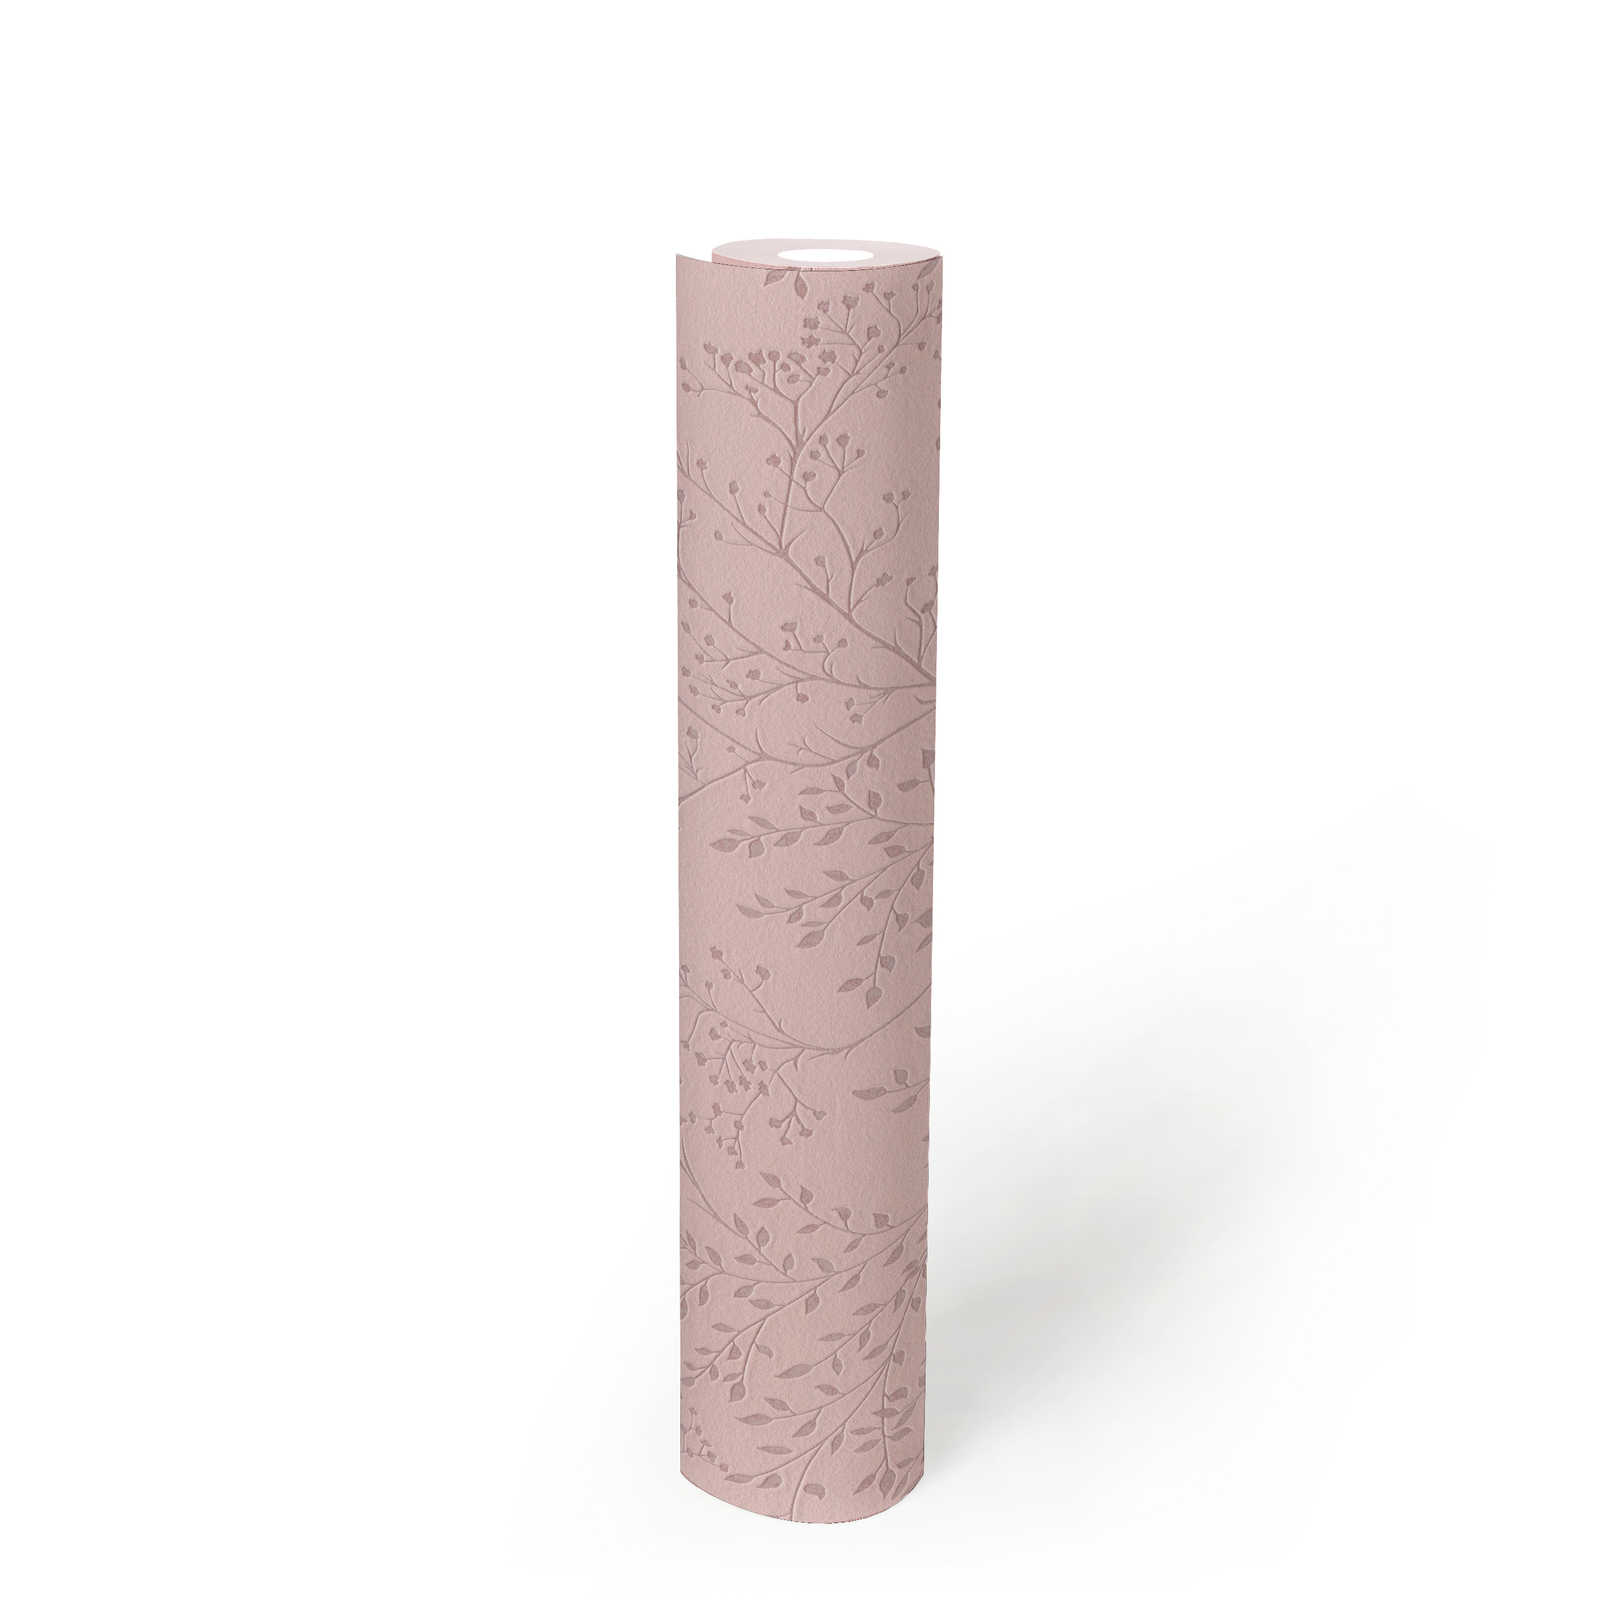             Papel pintado rosa liso con estampado de hojas, efecto brillo y textura
        